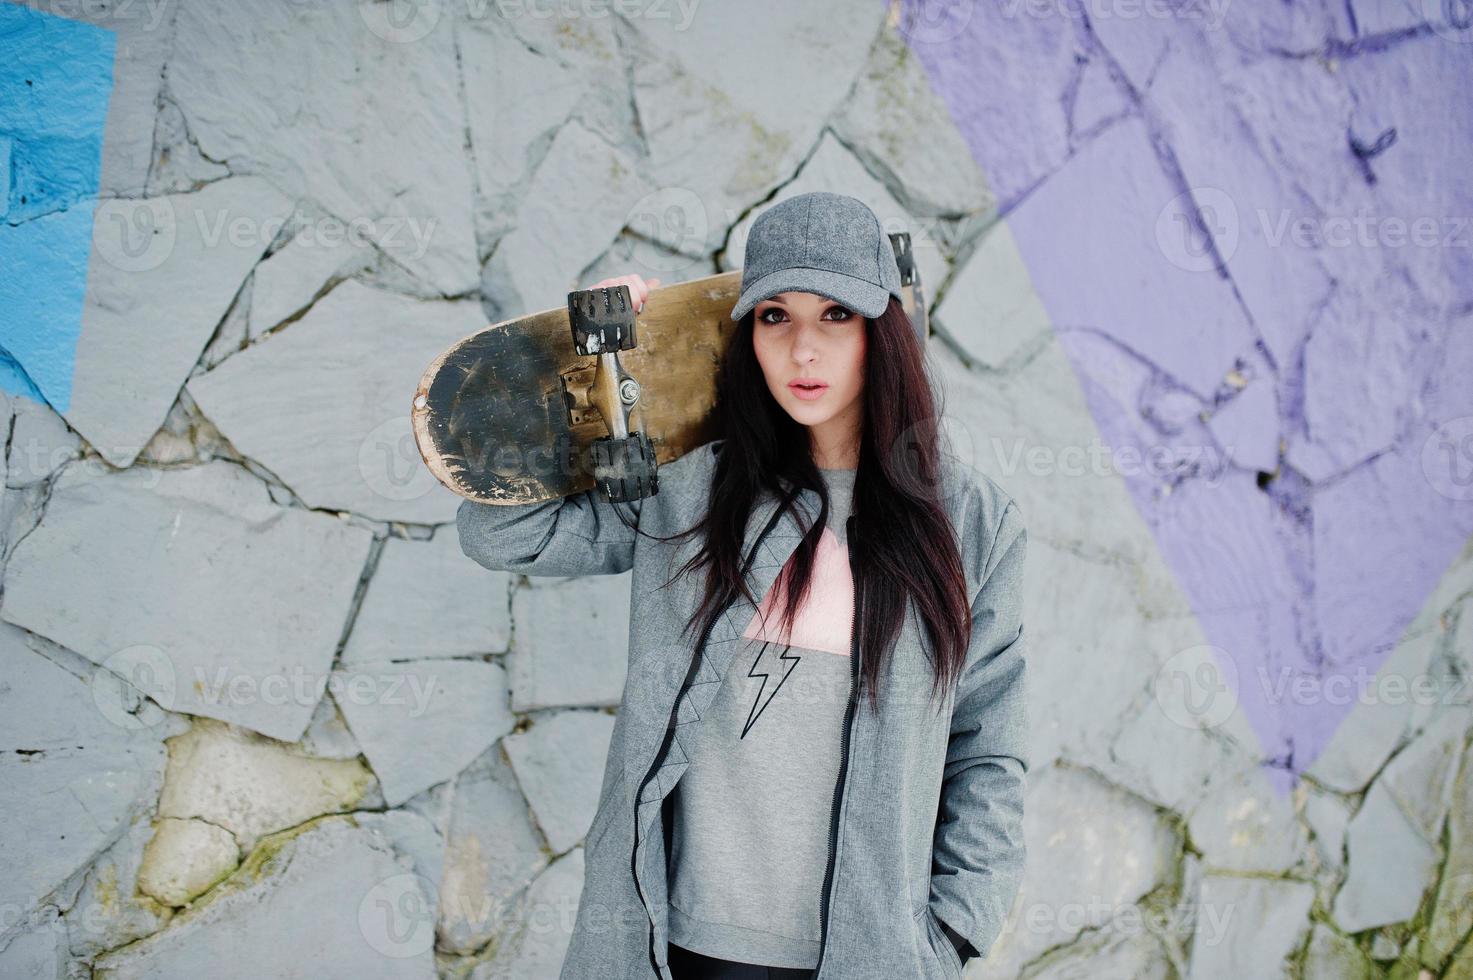 stilvolles brünettes mädchen in grauer kappe, lässiger streetstyle mit skateboard am wintertag gegen farbige wand. foto